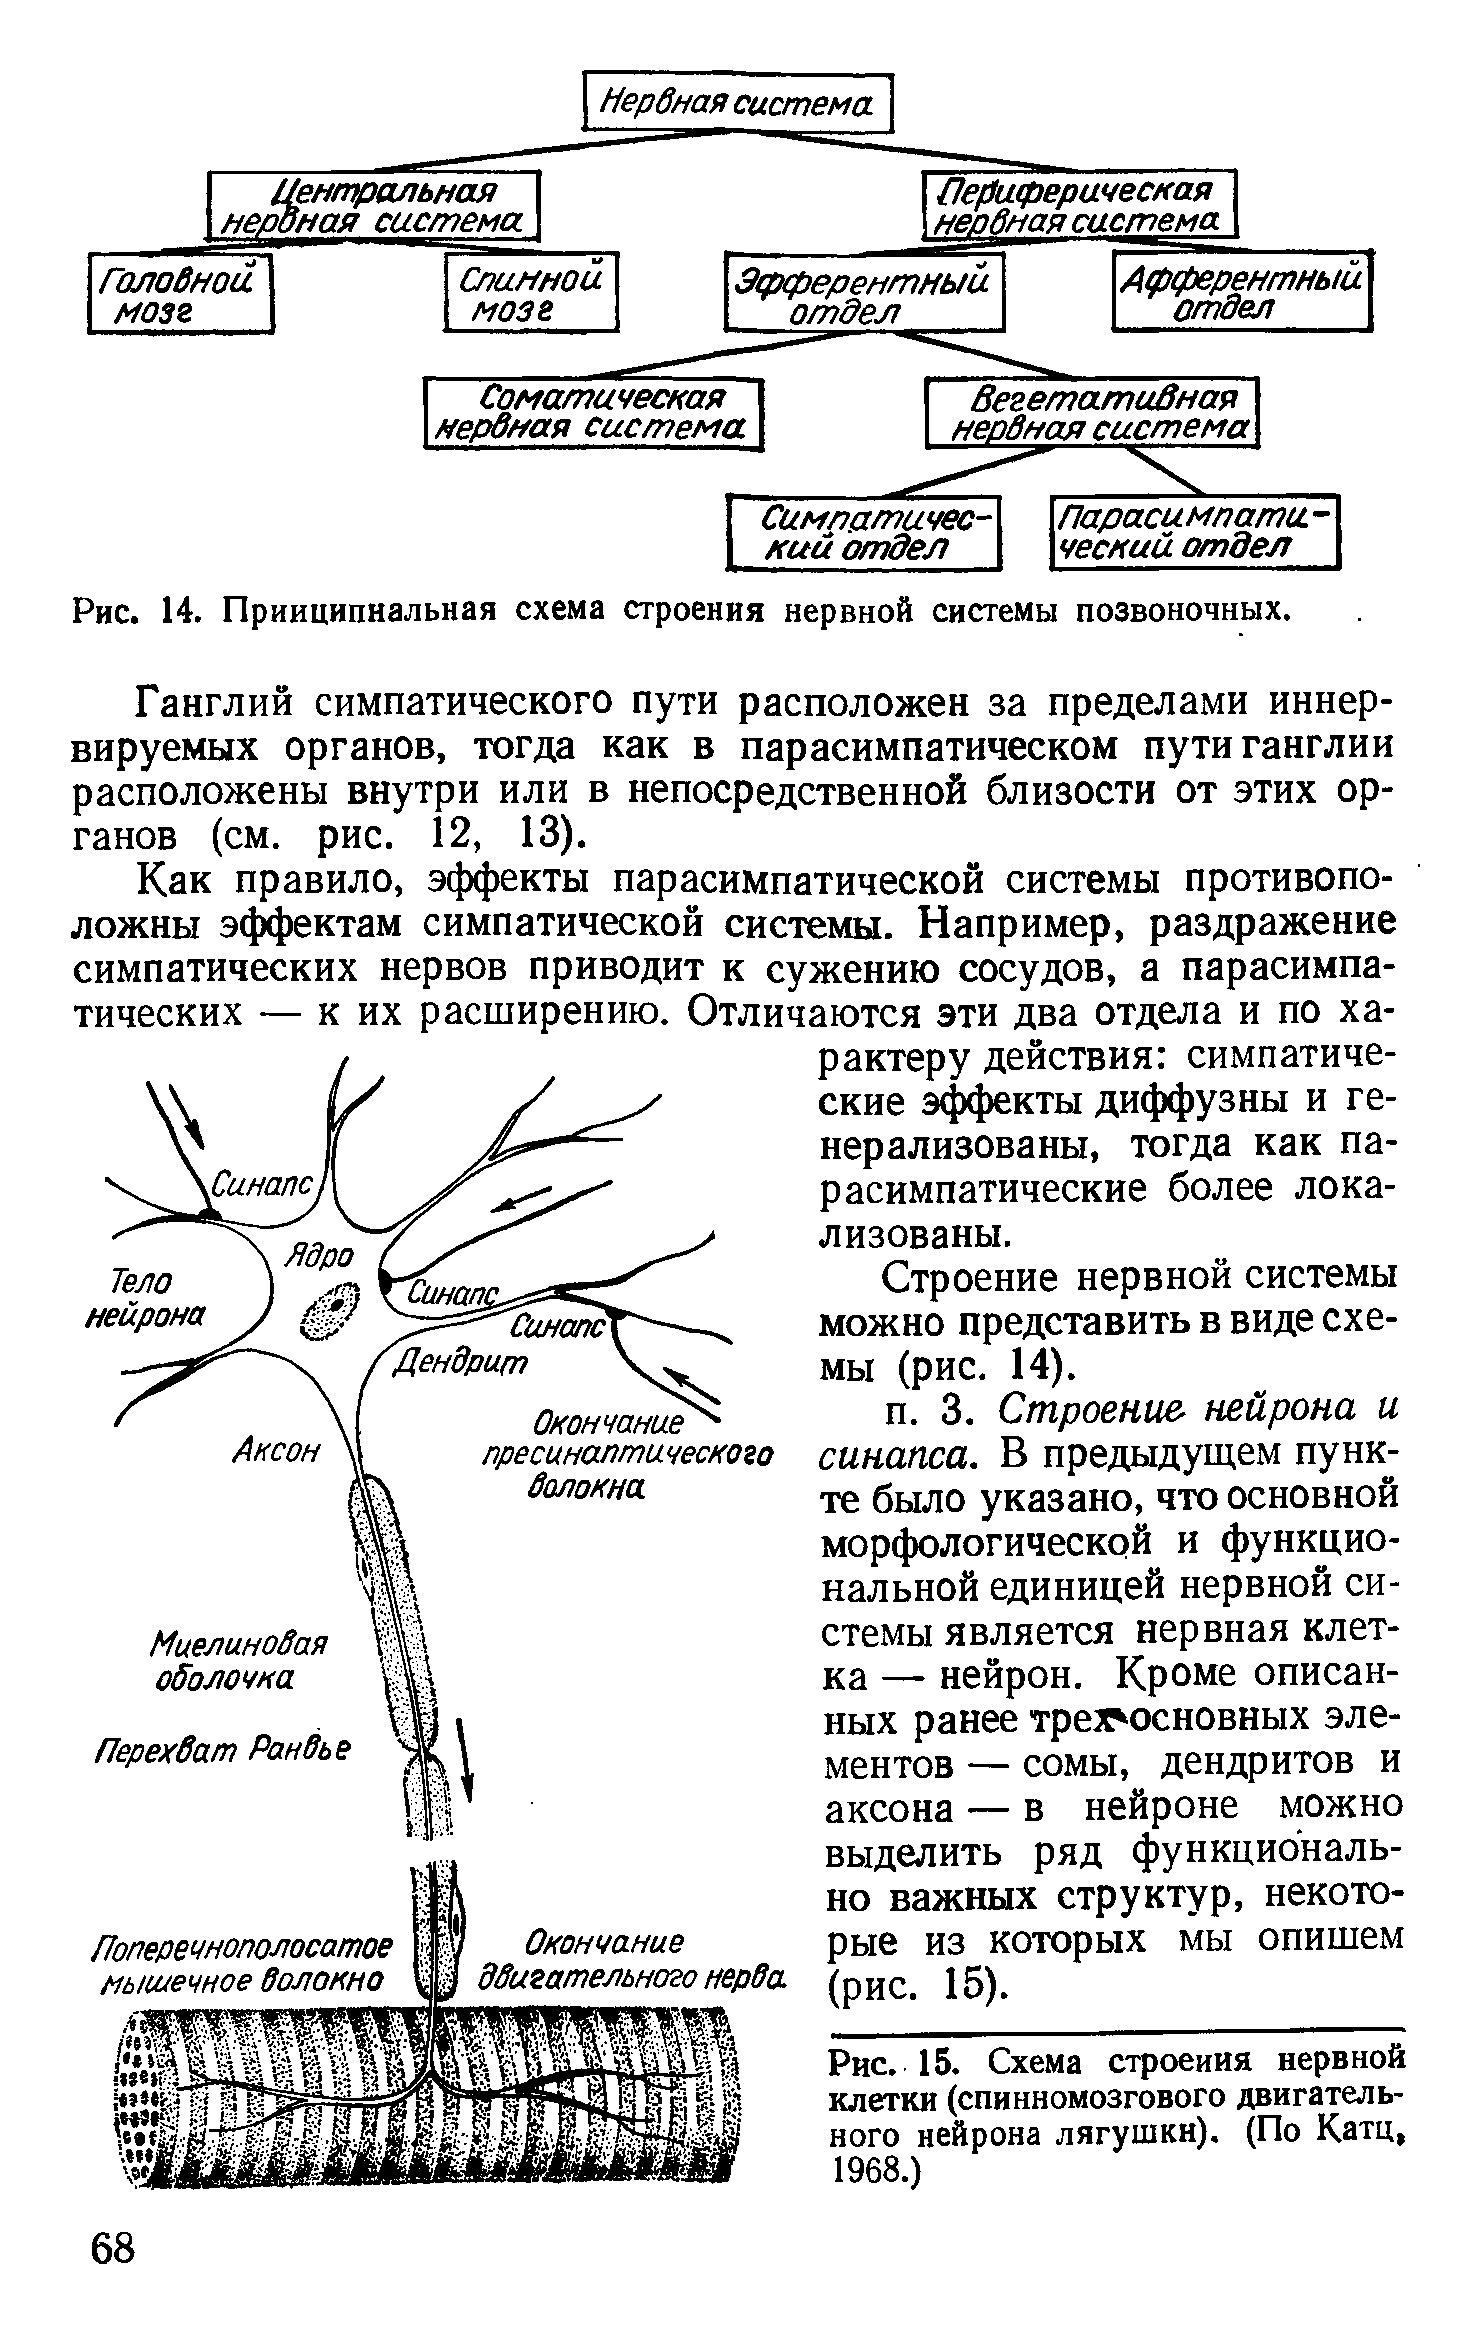 Рис. 14. Принципиальная схема строения нервной системы позвоночных.